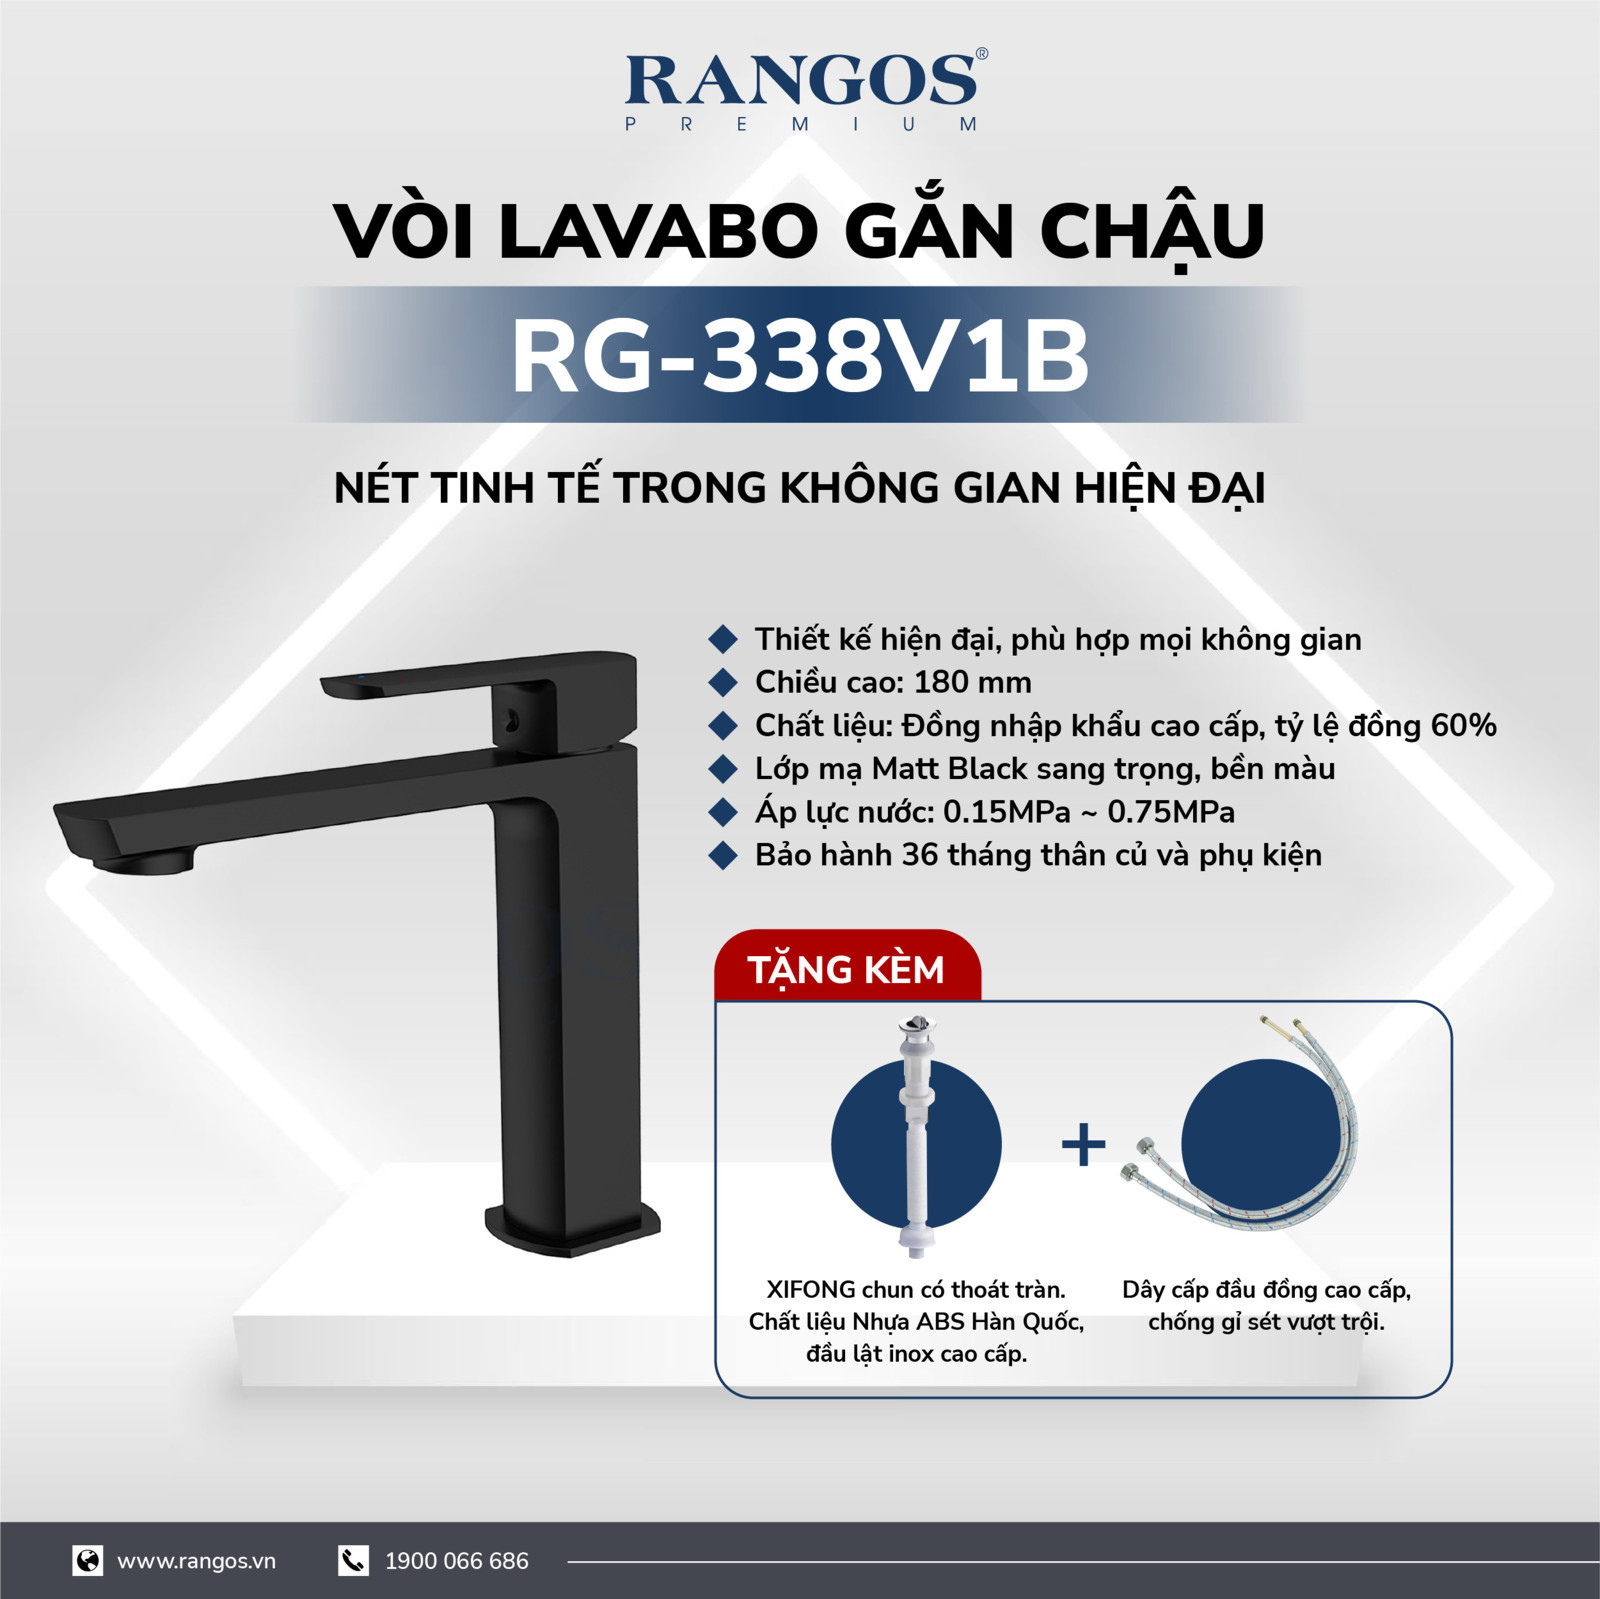 Bộ vòi lavabo gắn chậu Rangos RG-338V1B